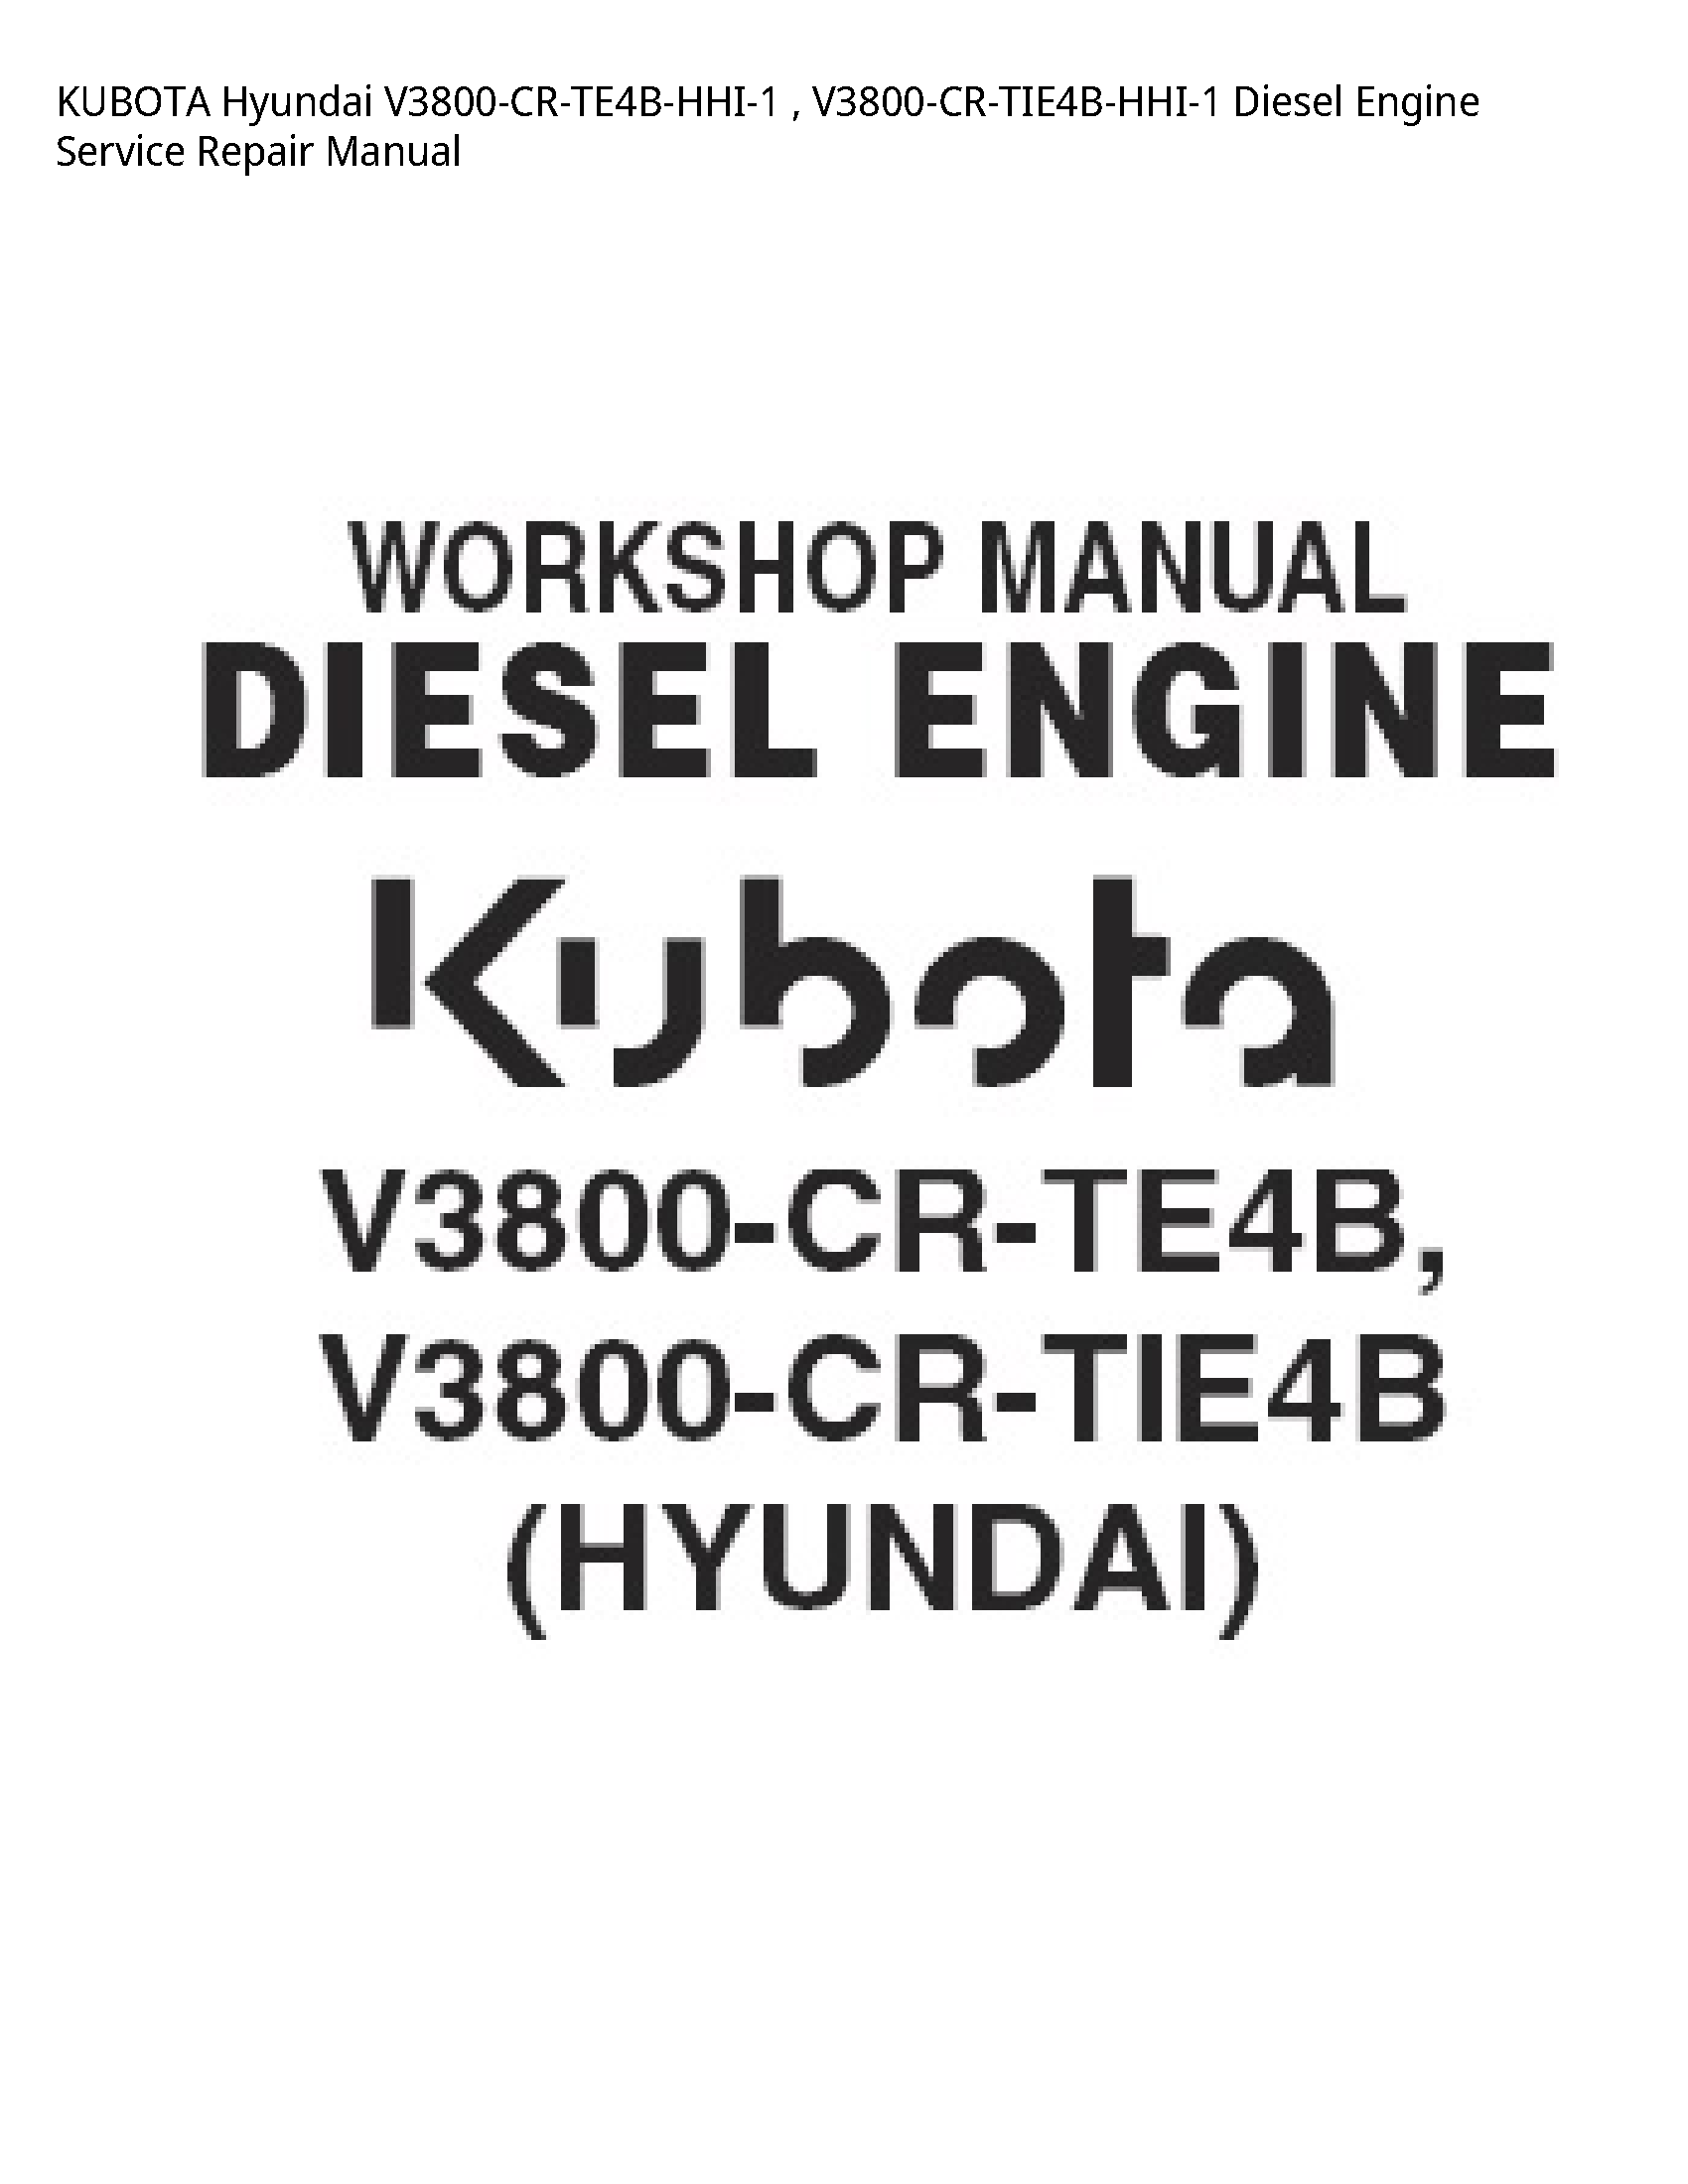 KUBOTA Hyundai V3800-CR-TE4B-HHI-1   V3800-CR-TIE4B-HHI-1 Diesel Engine Service Repair Manual